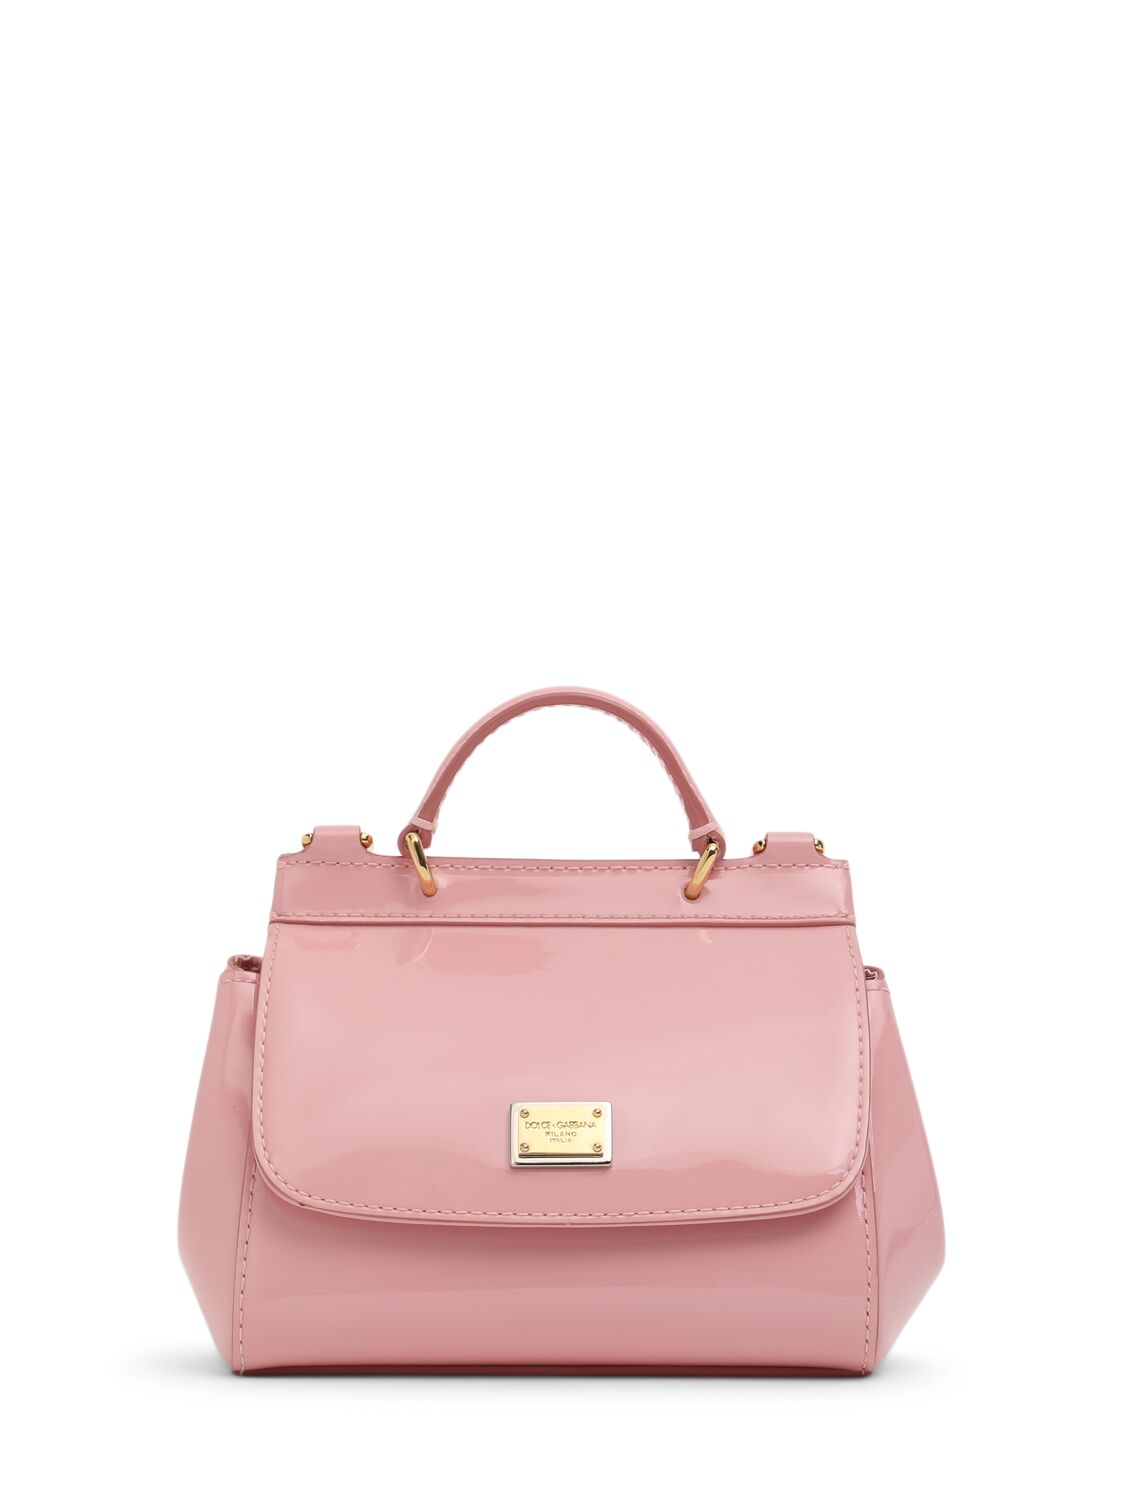 Dolce & Gabbana Sicily Patent Leather Shoulder Bag In Pink